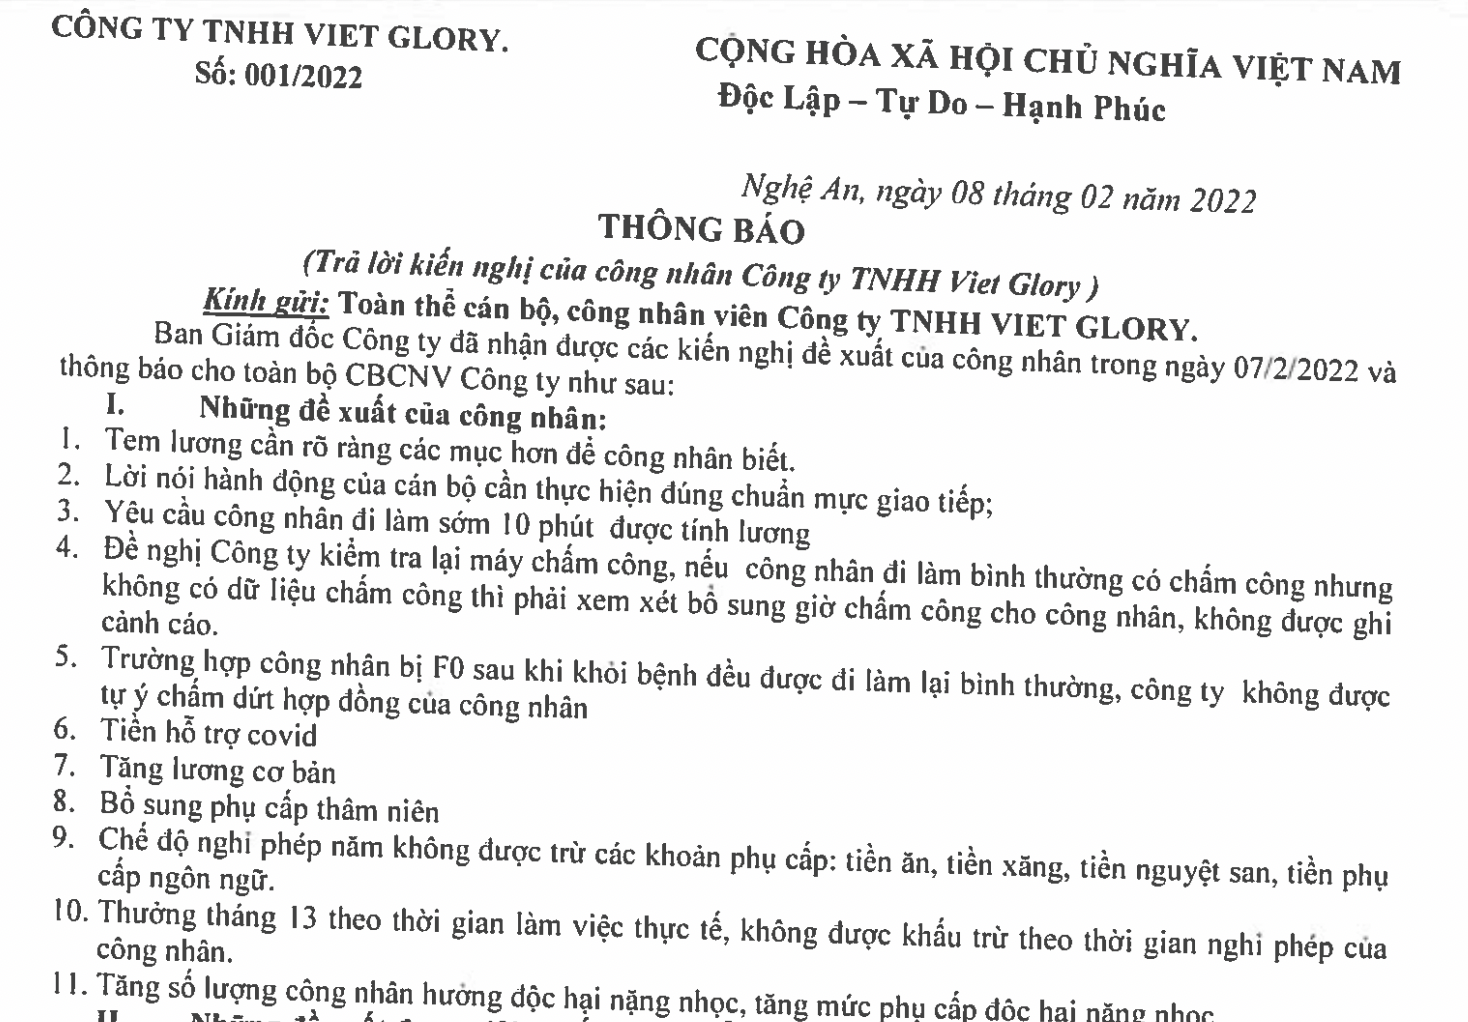 18 giờ chiều qua 8/2, lãnh đạo Công ty TNHH Viet Glory đã có văn bản trả lời 11 yêu cầu, kiến nghị của người lao động